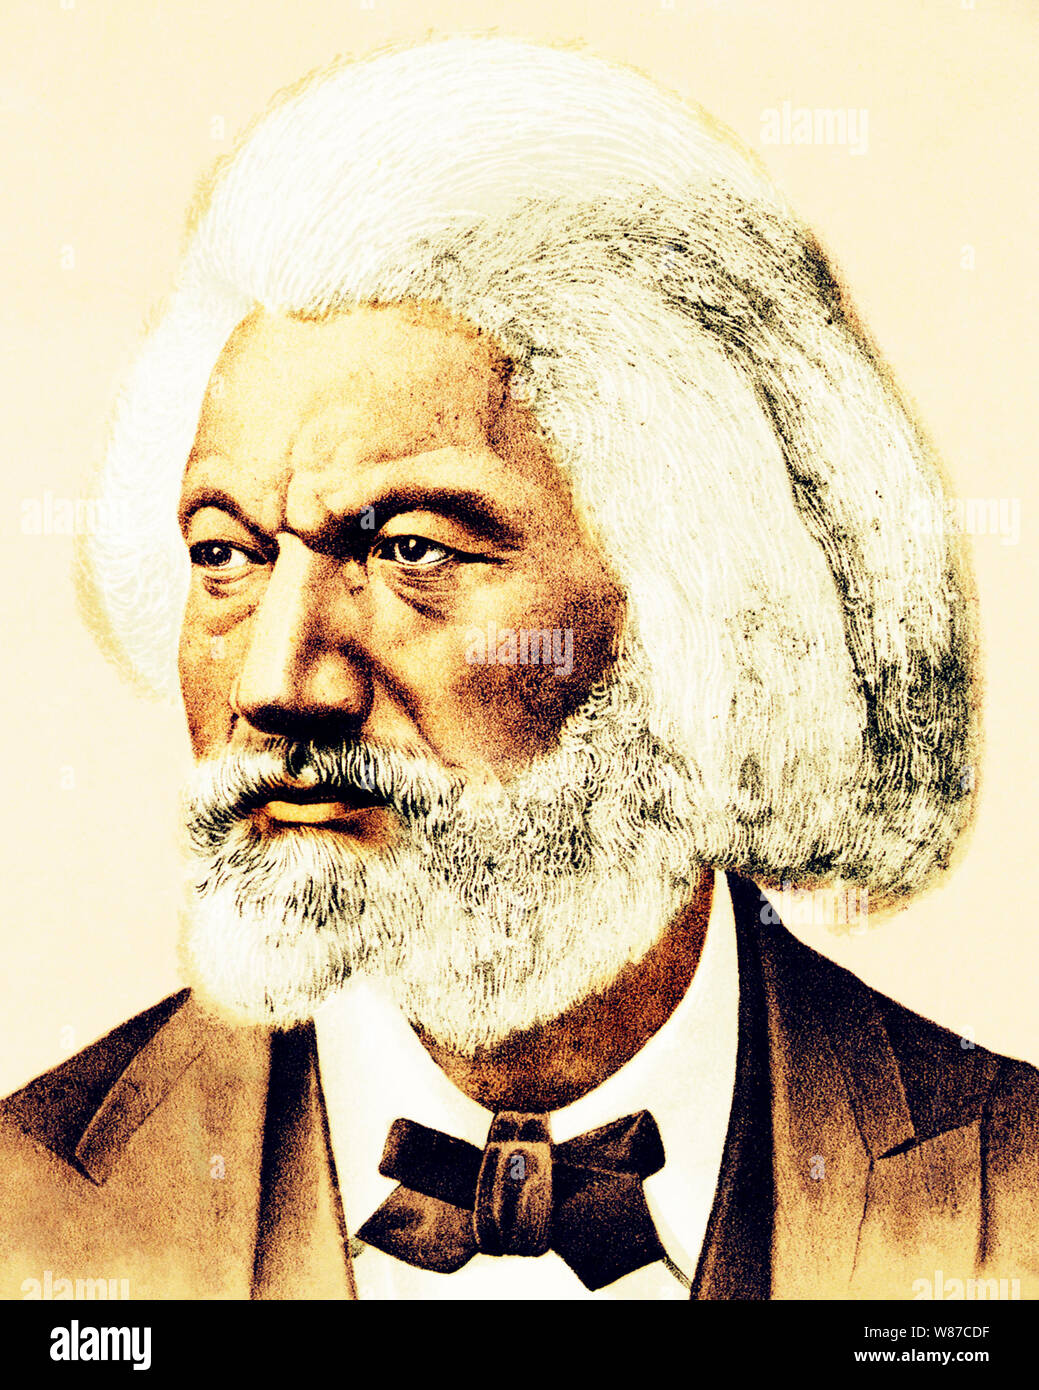 Vintage portrait couleur de réformateur social américain, abolitionniste, orateur, écrivain et homme d'Frederick Douglass (né Frederick Augustus Washington Bailey) c1818 - 1895). Banque D'Images